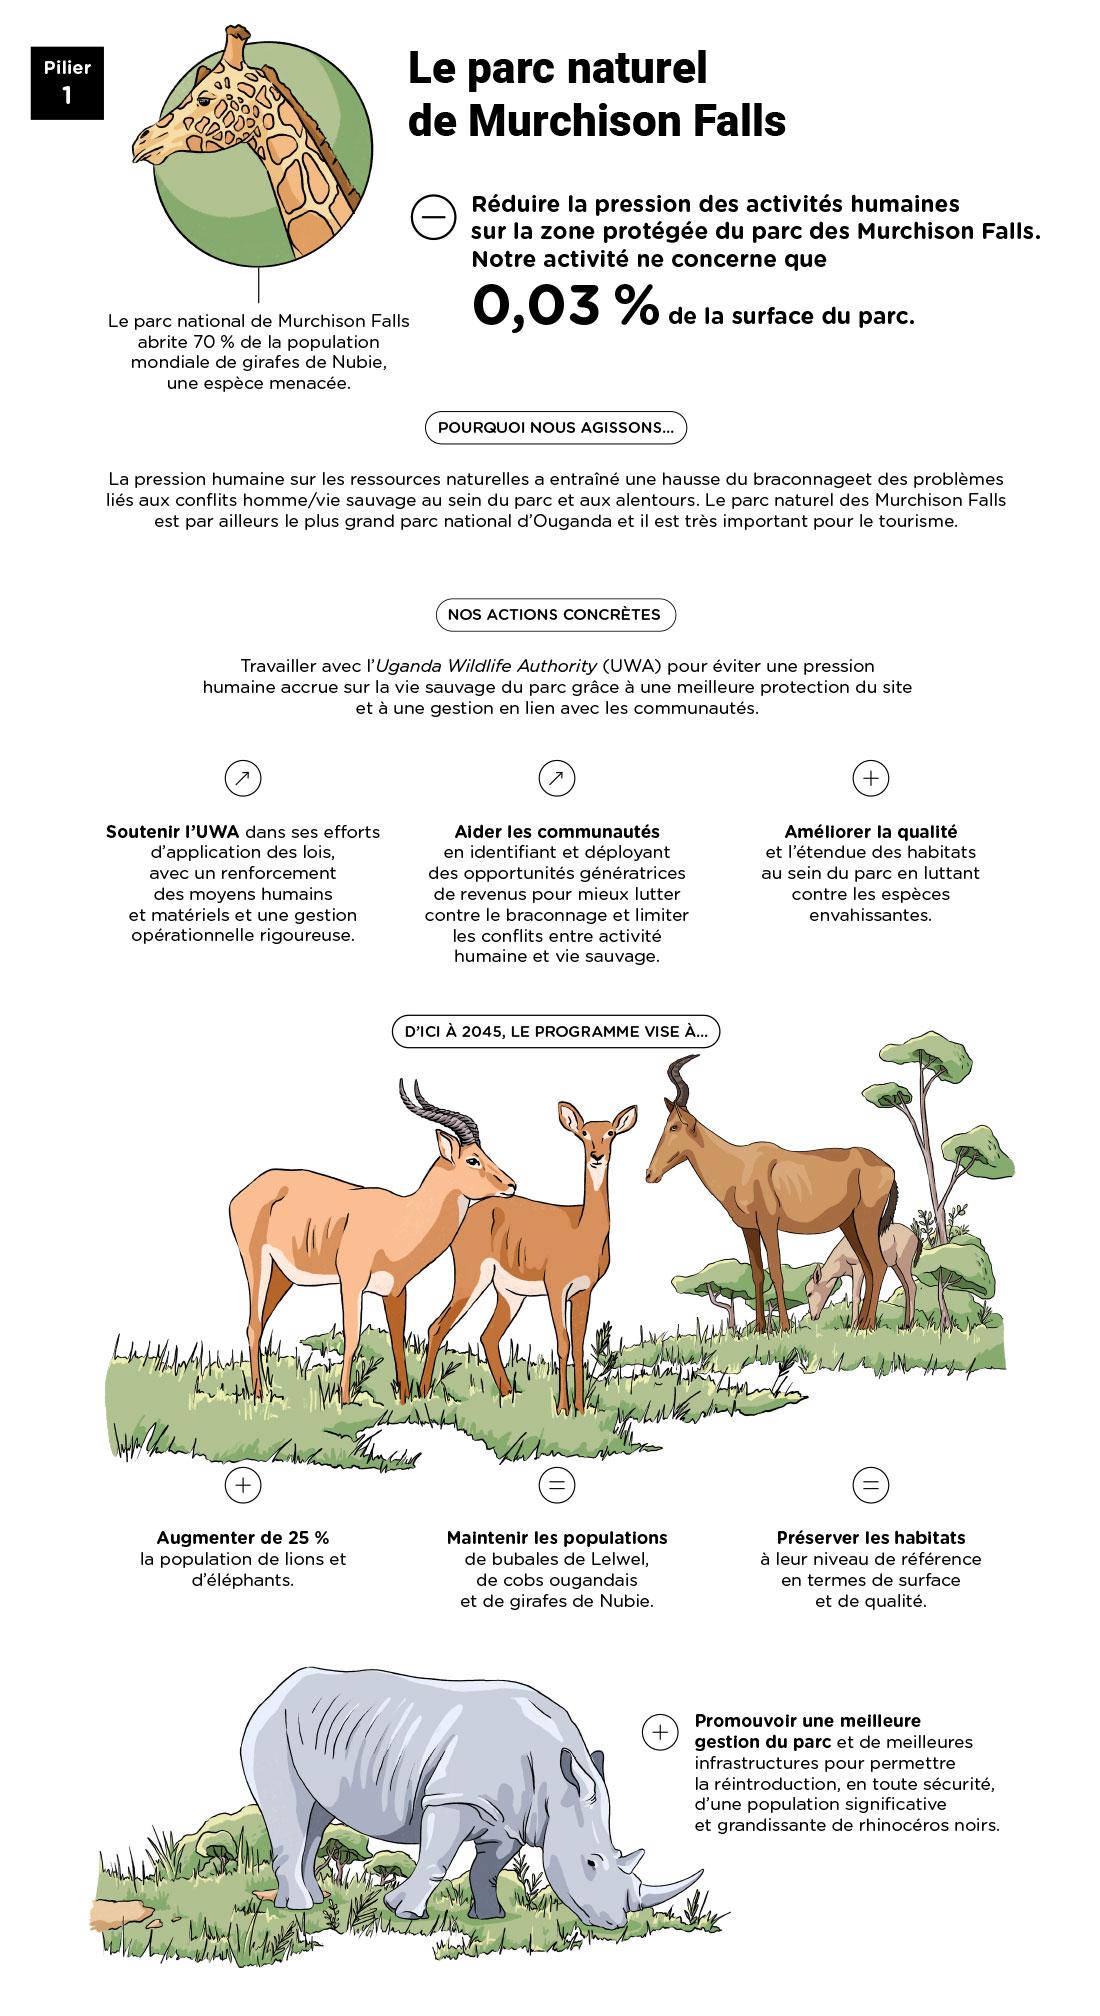 Infographie « Pilier 1 : Le parc naturel de Murchison Falls » - voir description détaillée ci-après